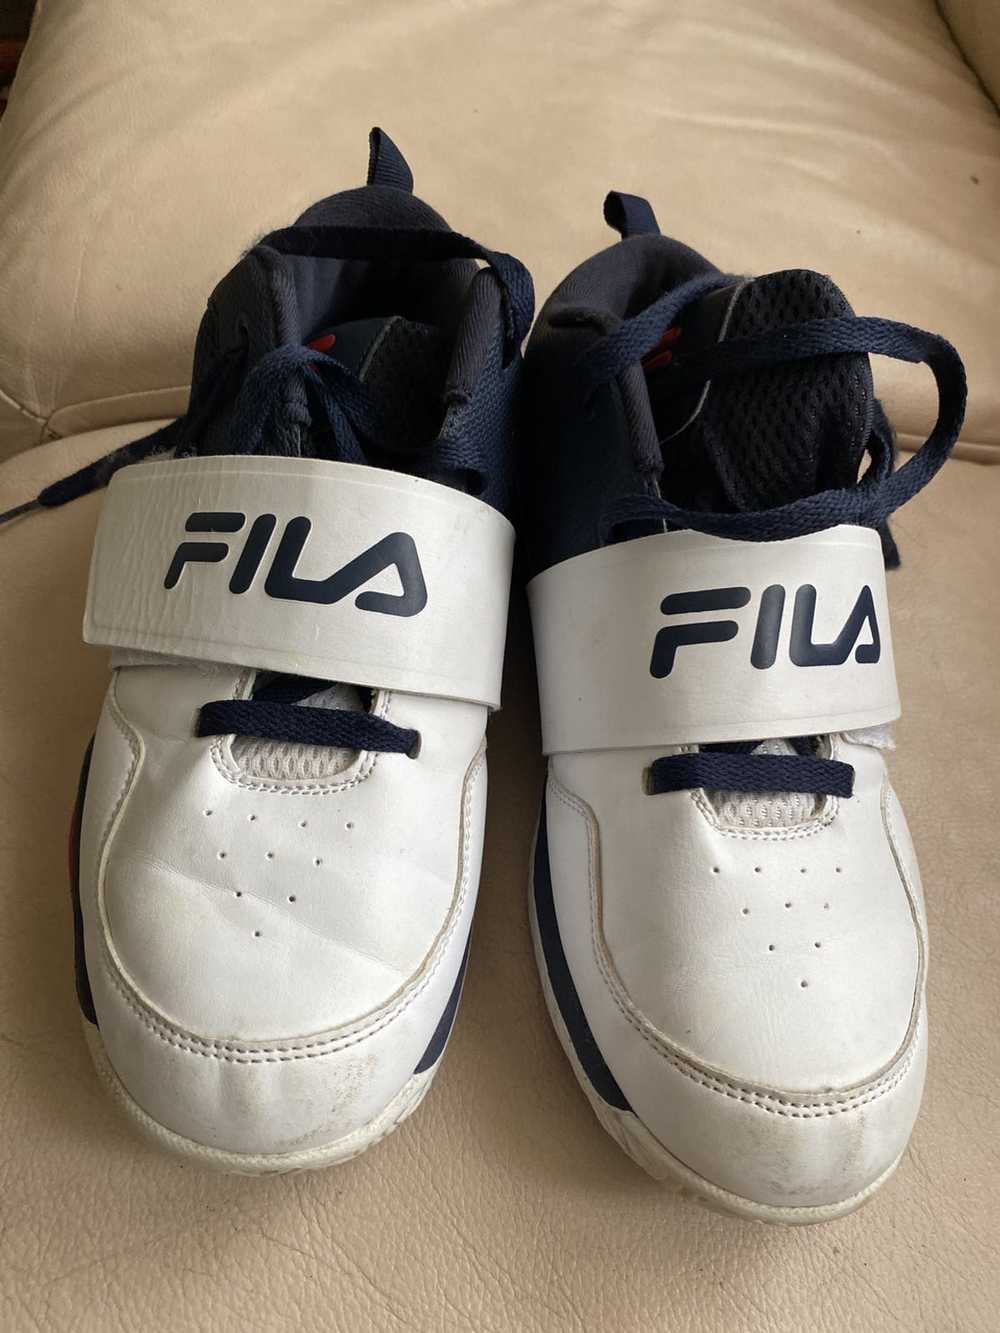 Fila FILA is slightly used - image 3